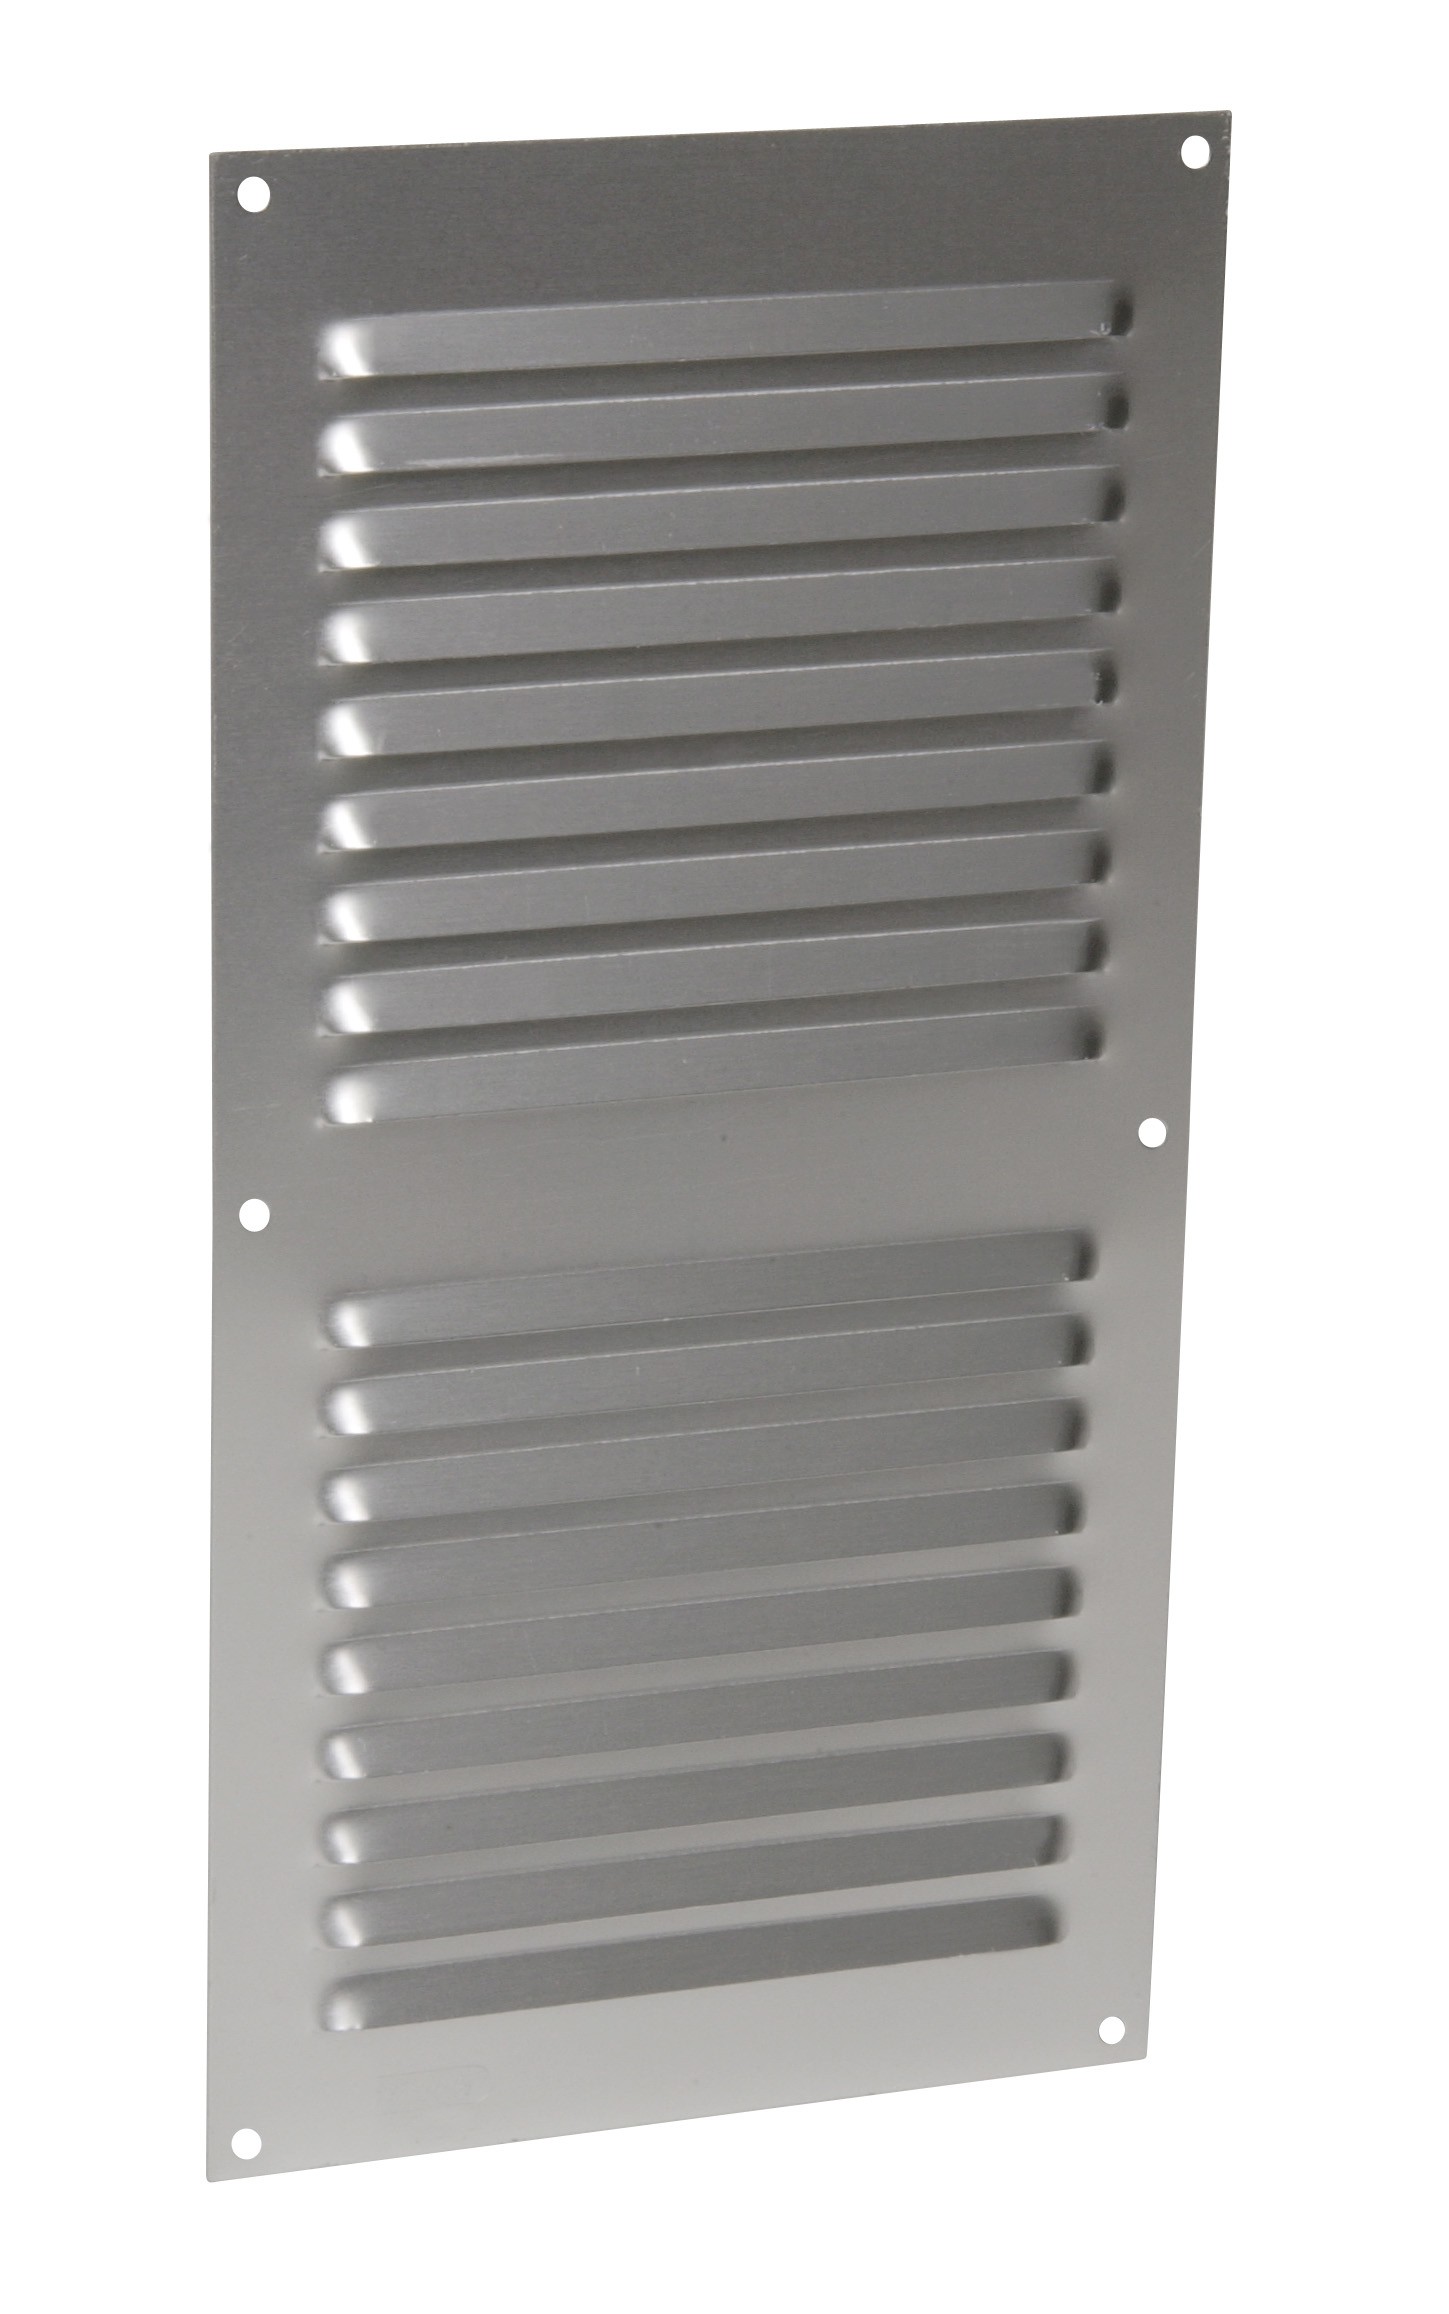 Aluminio anodizado gris con mosquitera: vertical rectangular 30X15